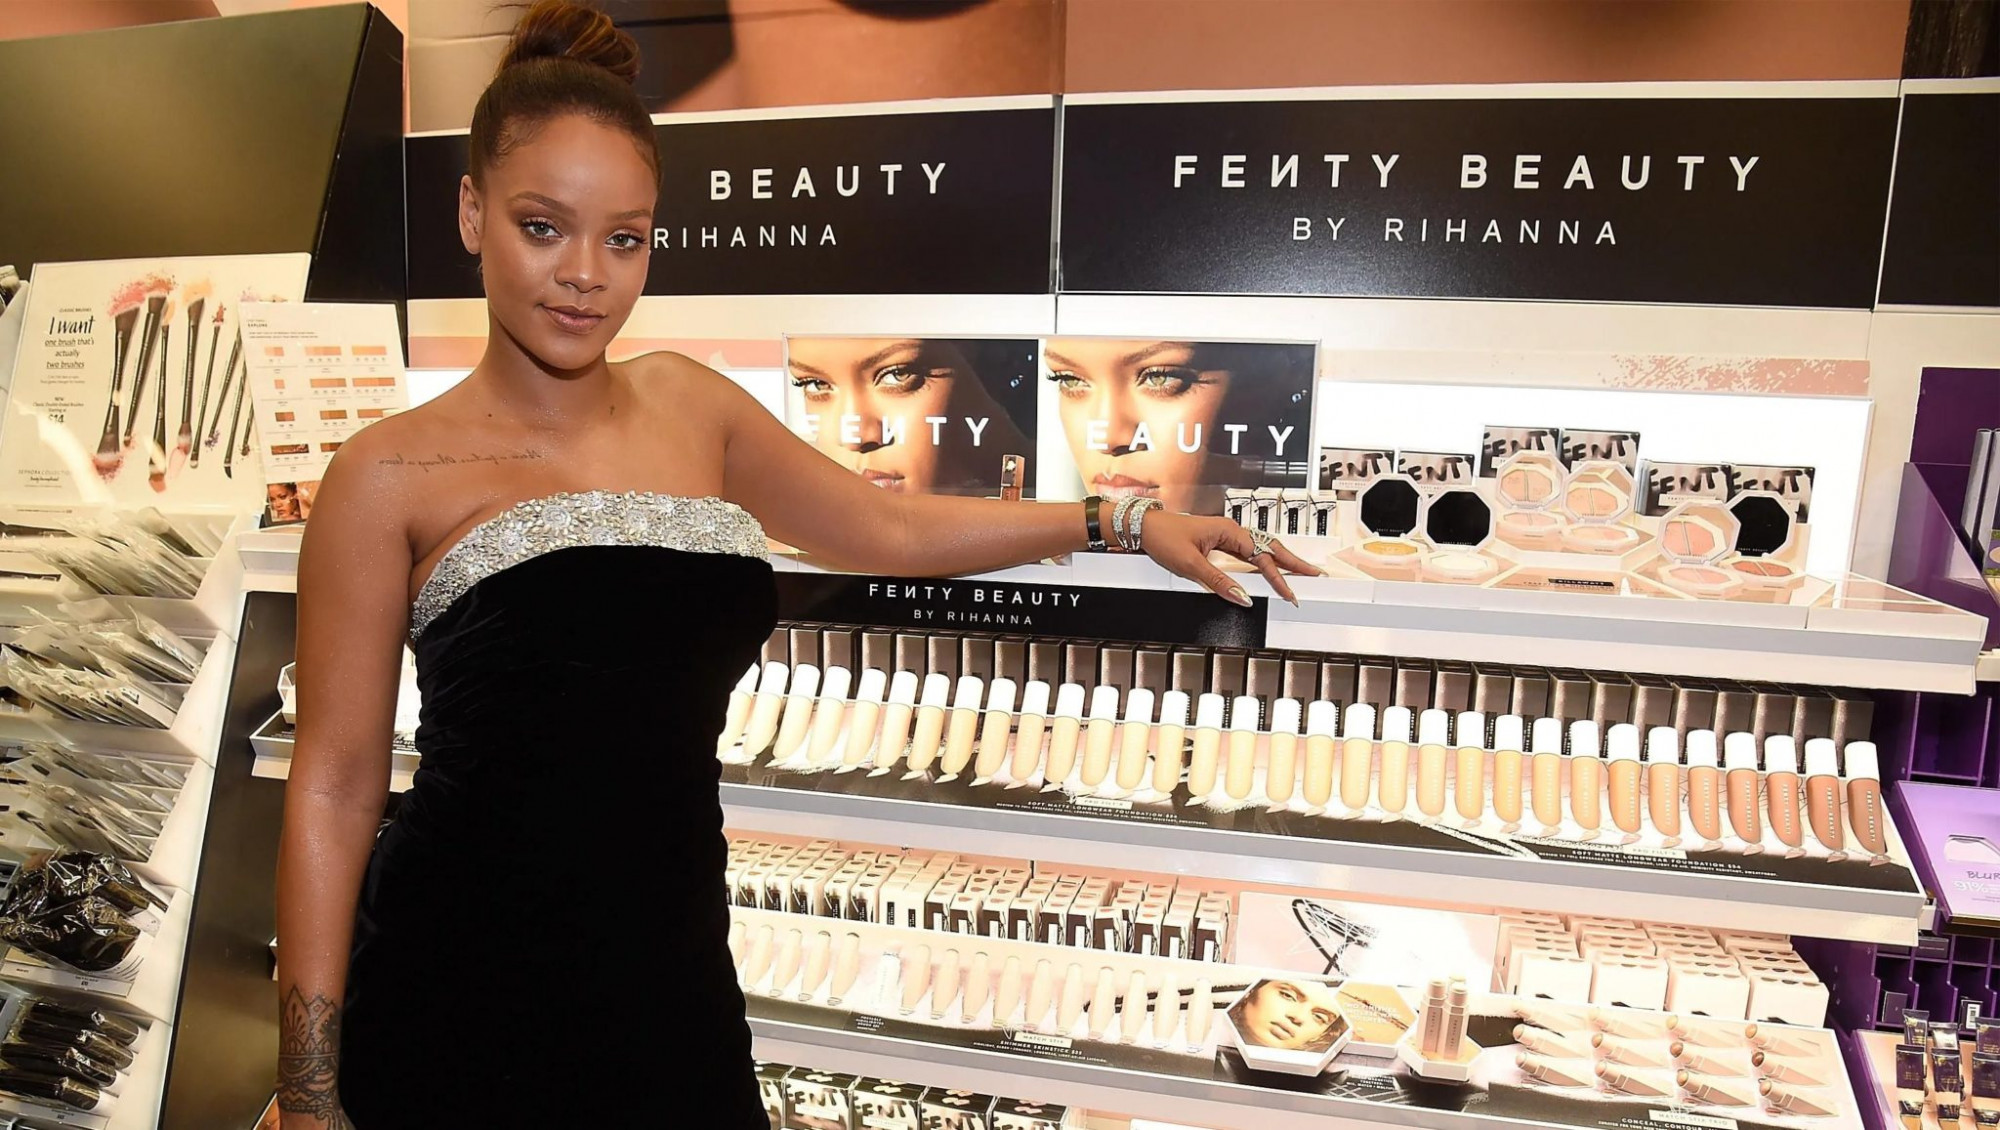 Nữ ca sĩ Rihanna và thương hiệu Fenty Beauty - Ảnh: Kevin Mazur/Getty Images